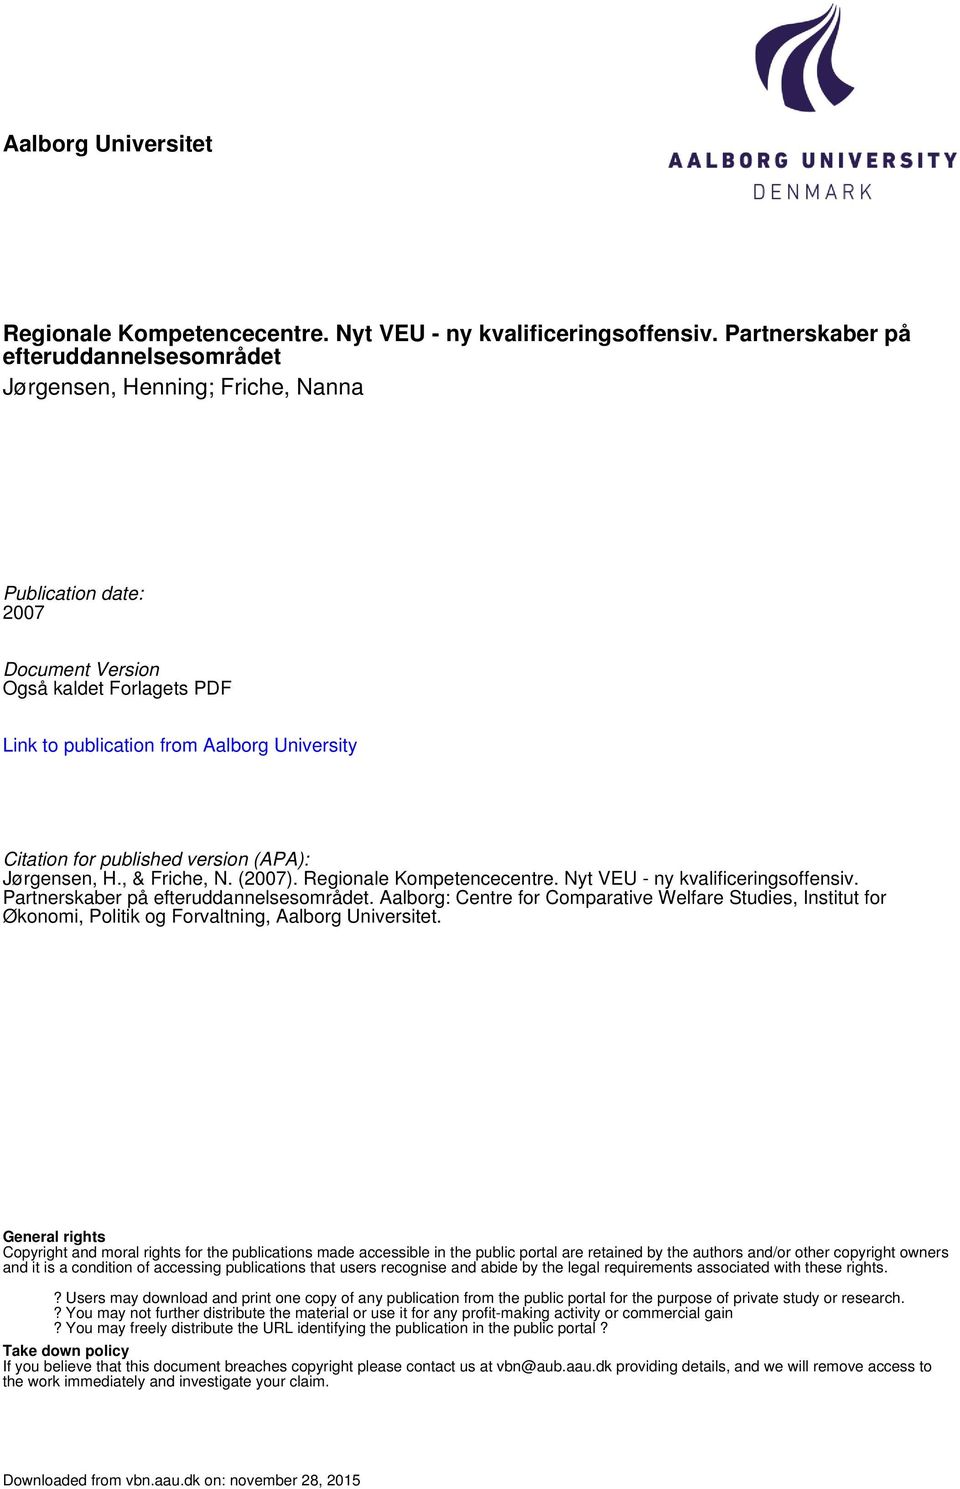 published version (APA): Jørgensen, H., & Friche, N. (2007). Regionale Kompetencecentre. Nyt VEU - ny kvalificeringsoffensiv. Partnerskaber på efteruddannelsesområdet.